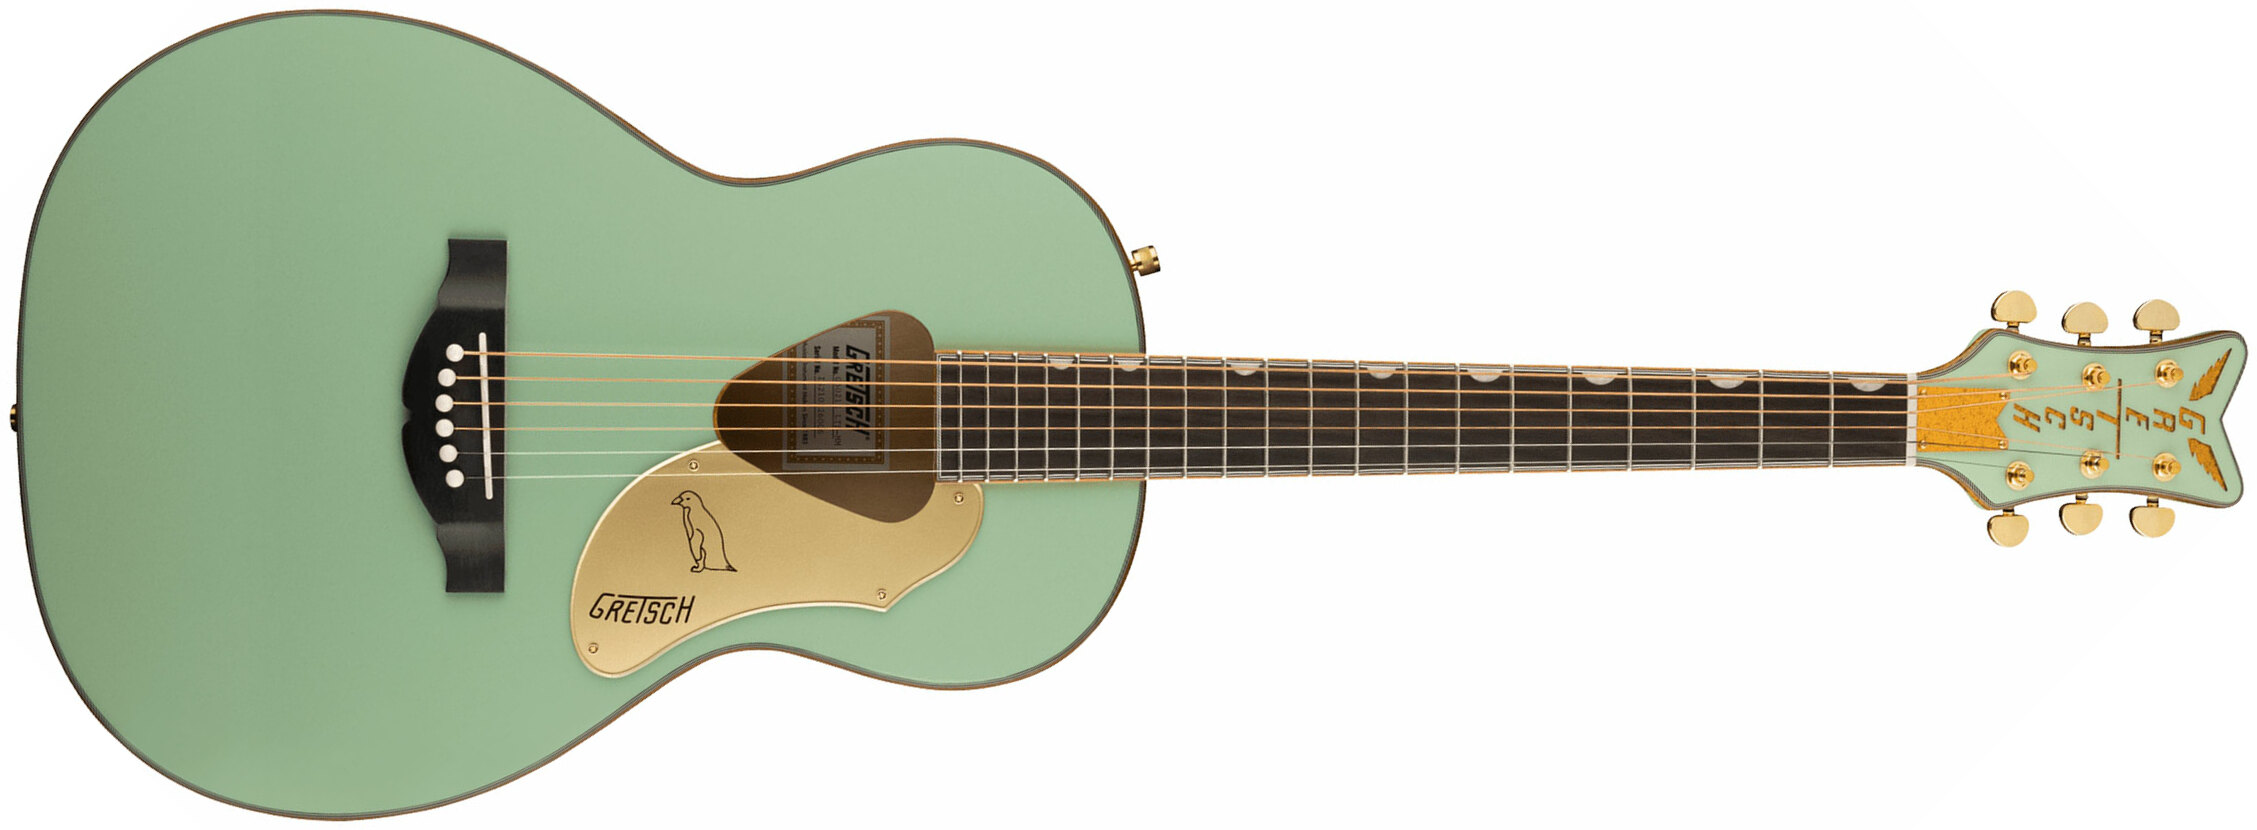 Gretsch G5021e Rancher Penguin Parlor Epicea Erable Lau - Mint Metallic - Electro acoustic guitar - Main picture